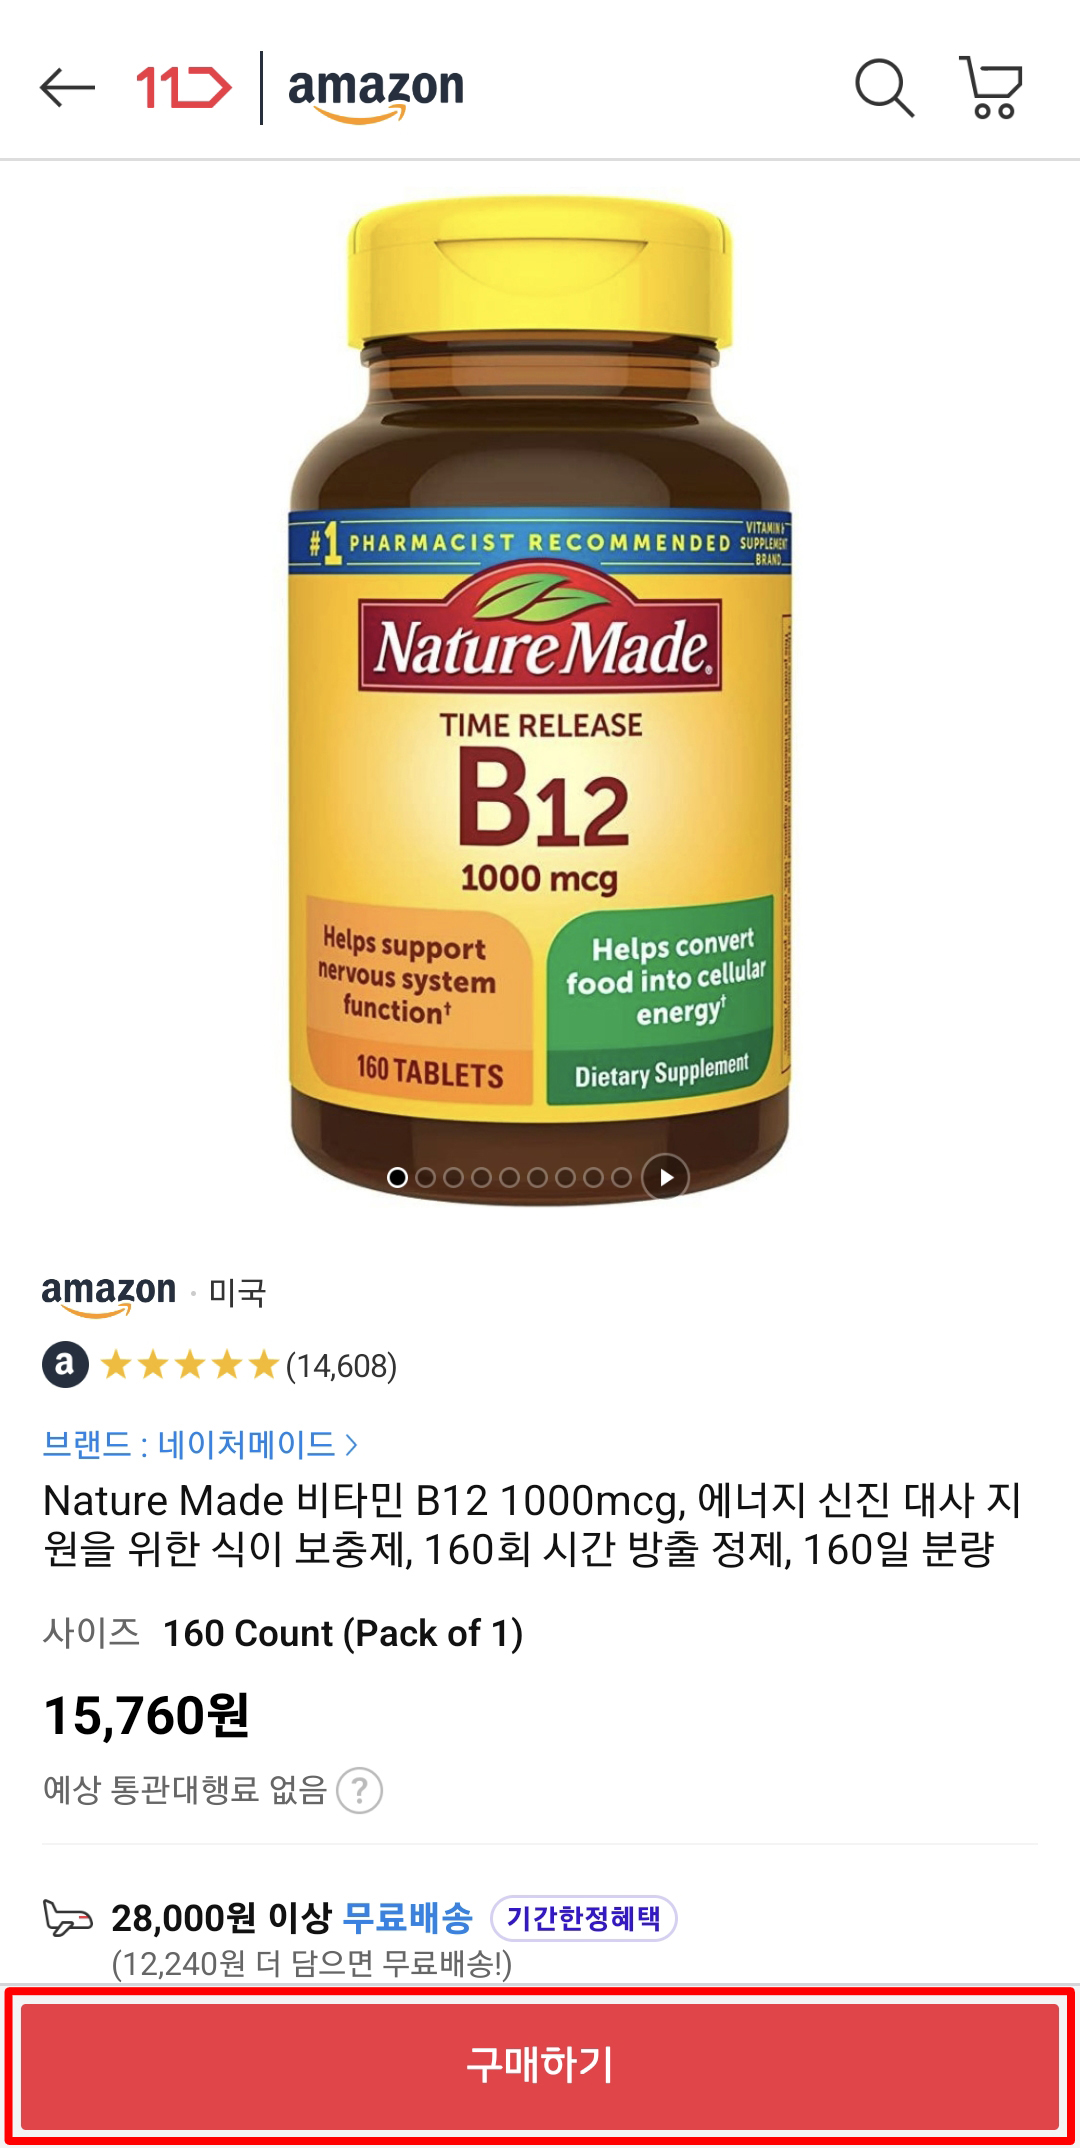 11번가 아마존 머니백 추천코드 ZMB7664 추천인 방법 비타민 B12 1000mcg Nature Made 네이처메이드